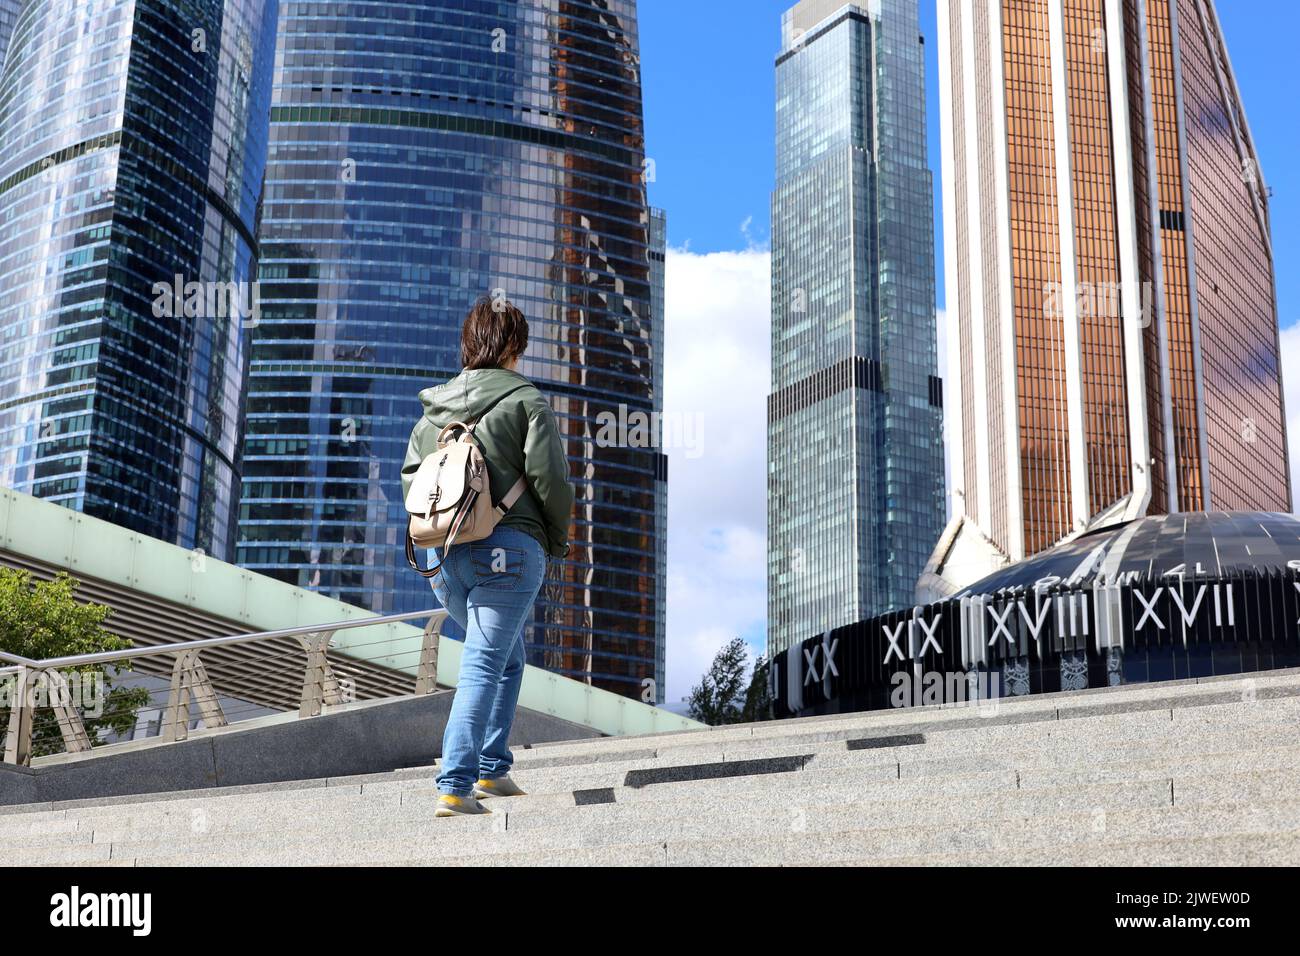 Die Frau geht die Treppe hinauf zu den Wolkenkratzern der Stadt Moskau. Internationales Business Center in der russischen Hauptstadt Stockfoto